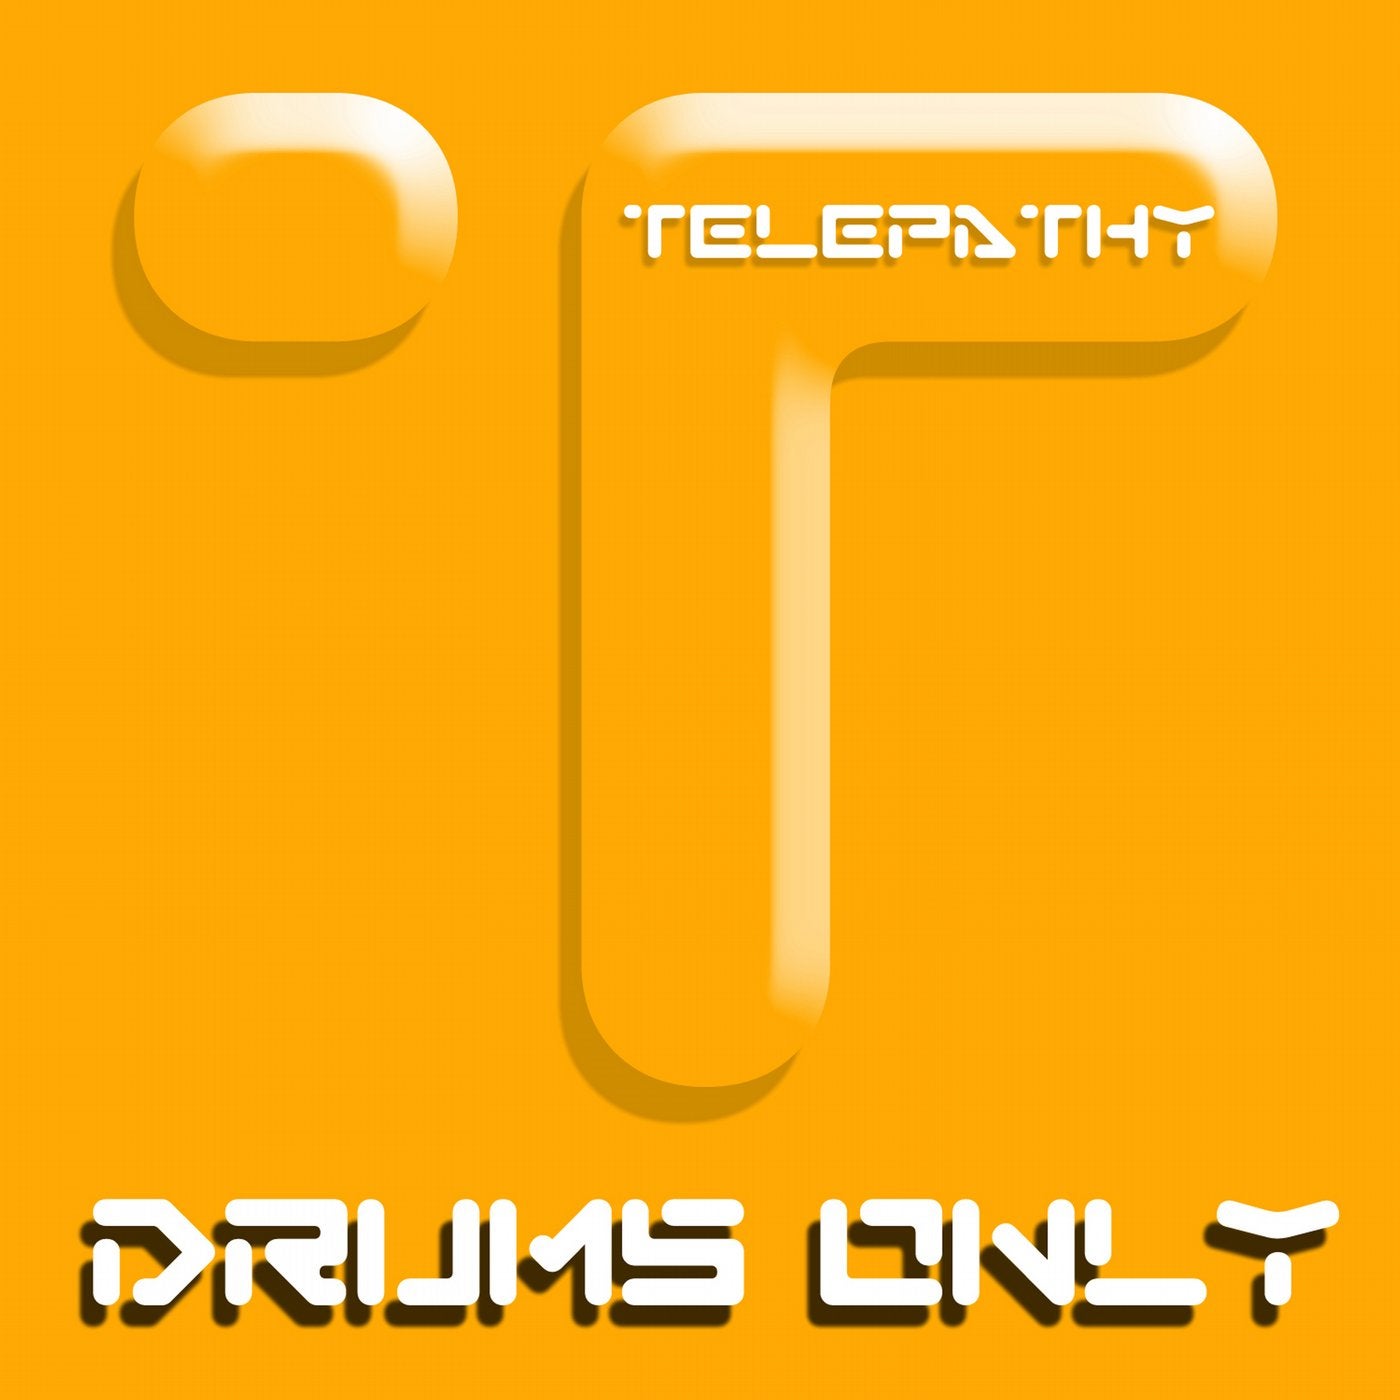 Beats Drums & Percussion Vol 7